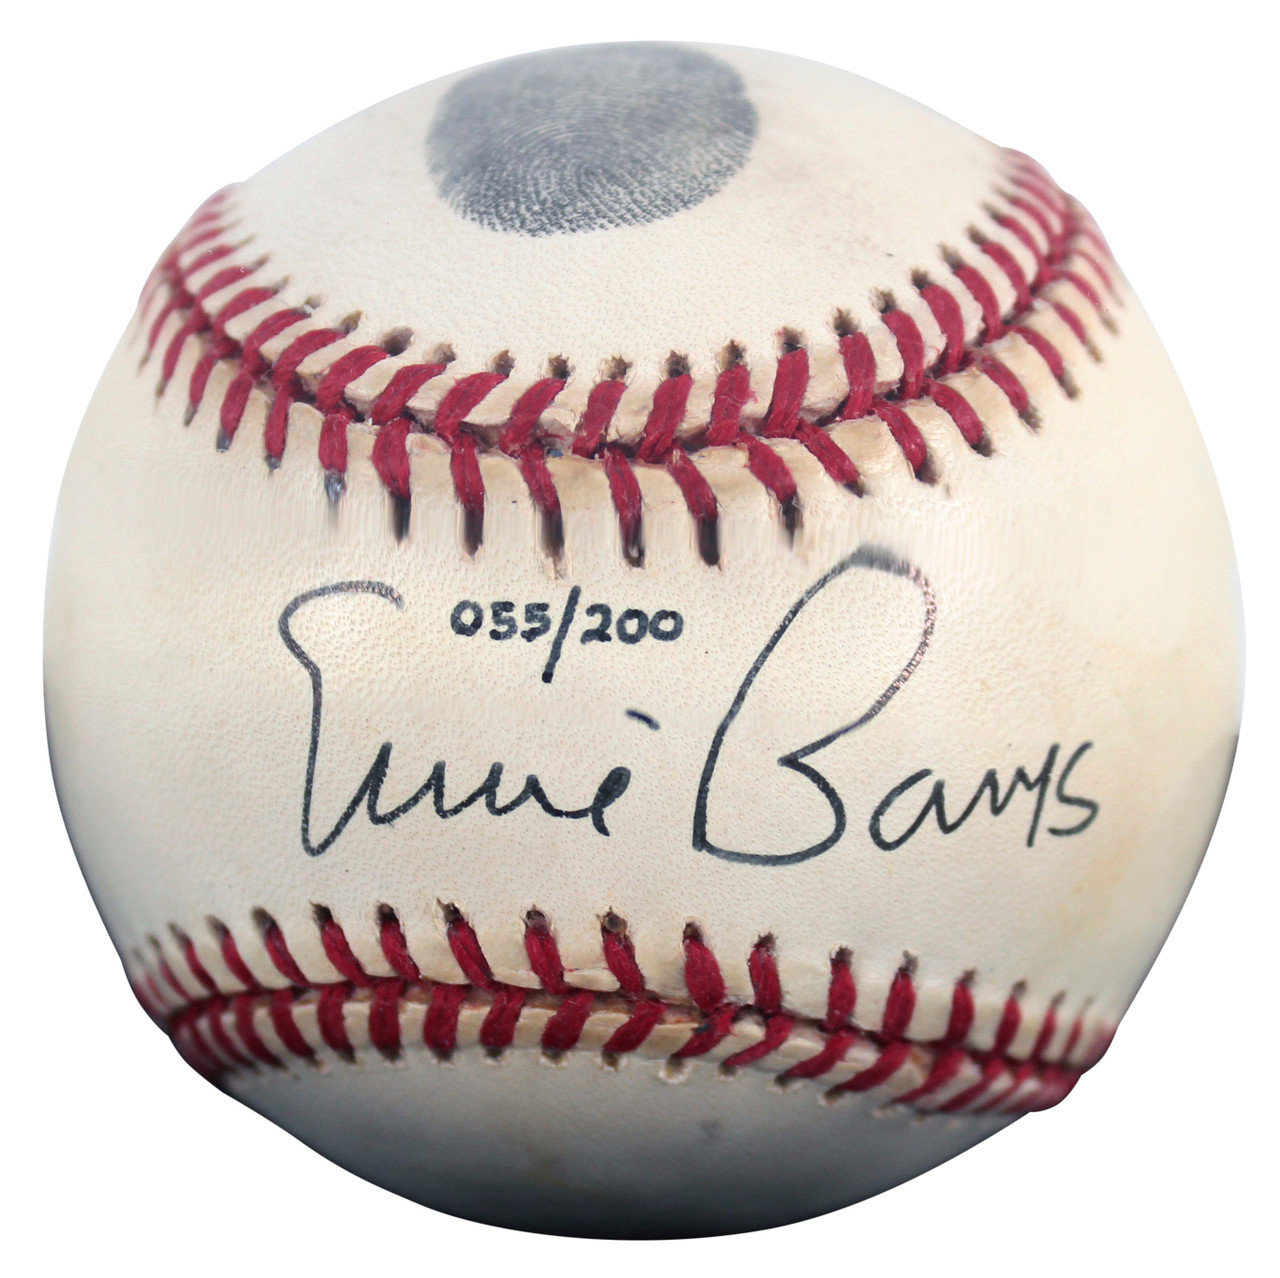 Ernie Banks Signed Baseball